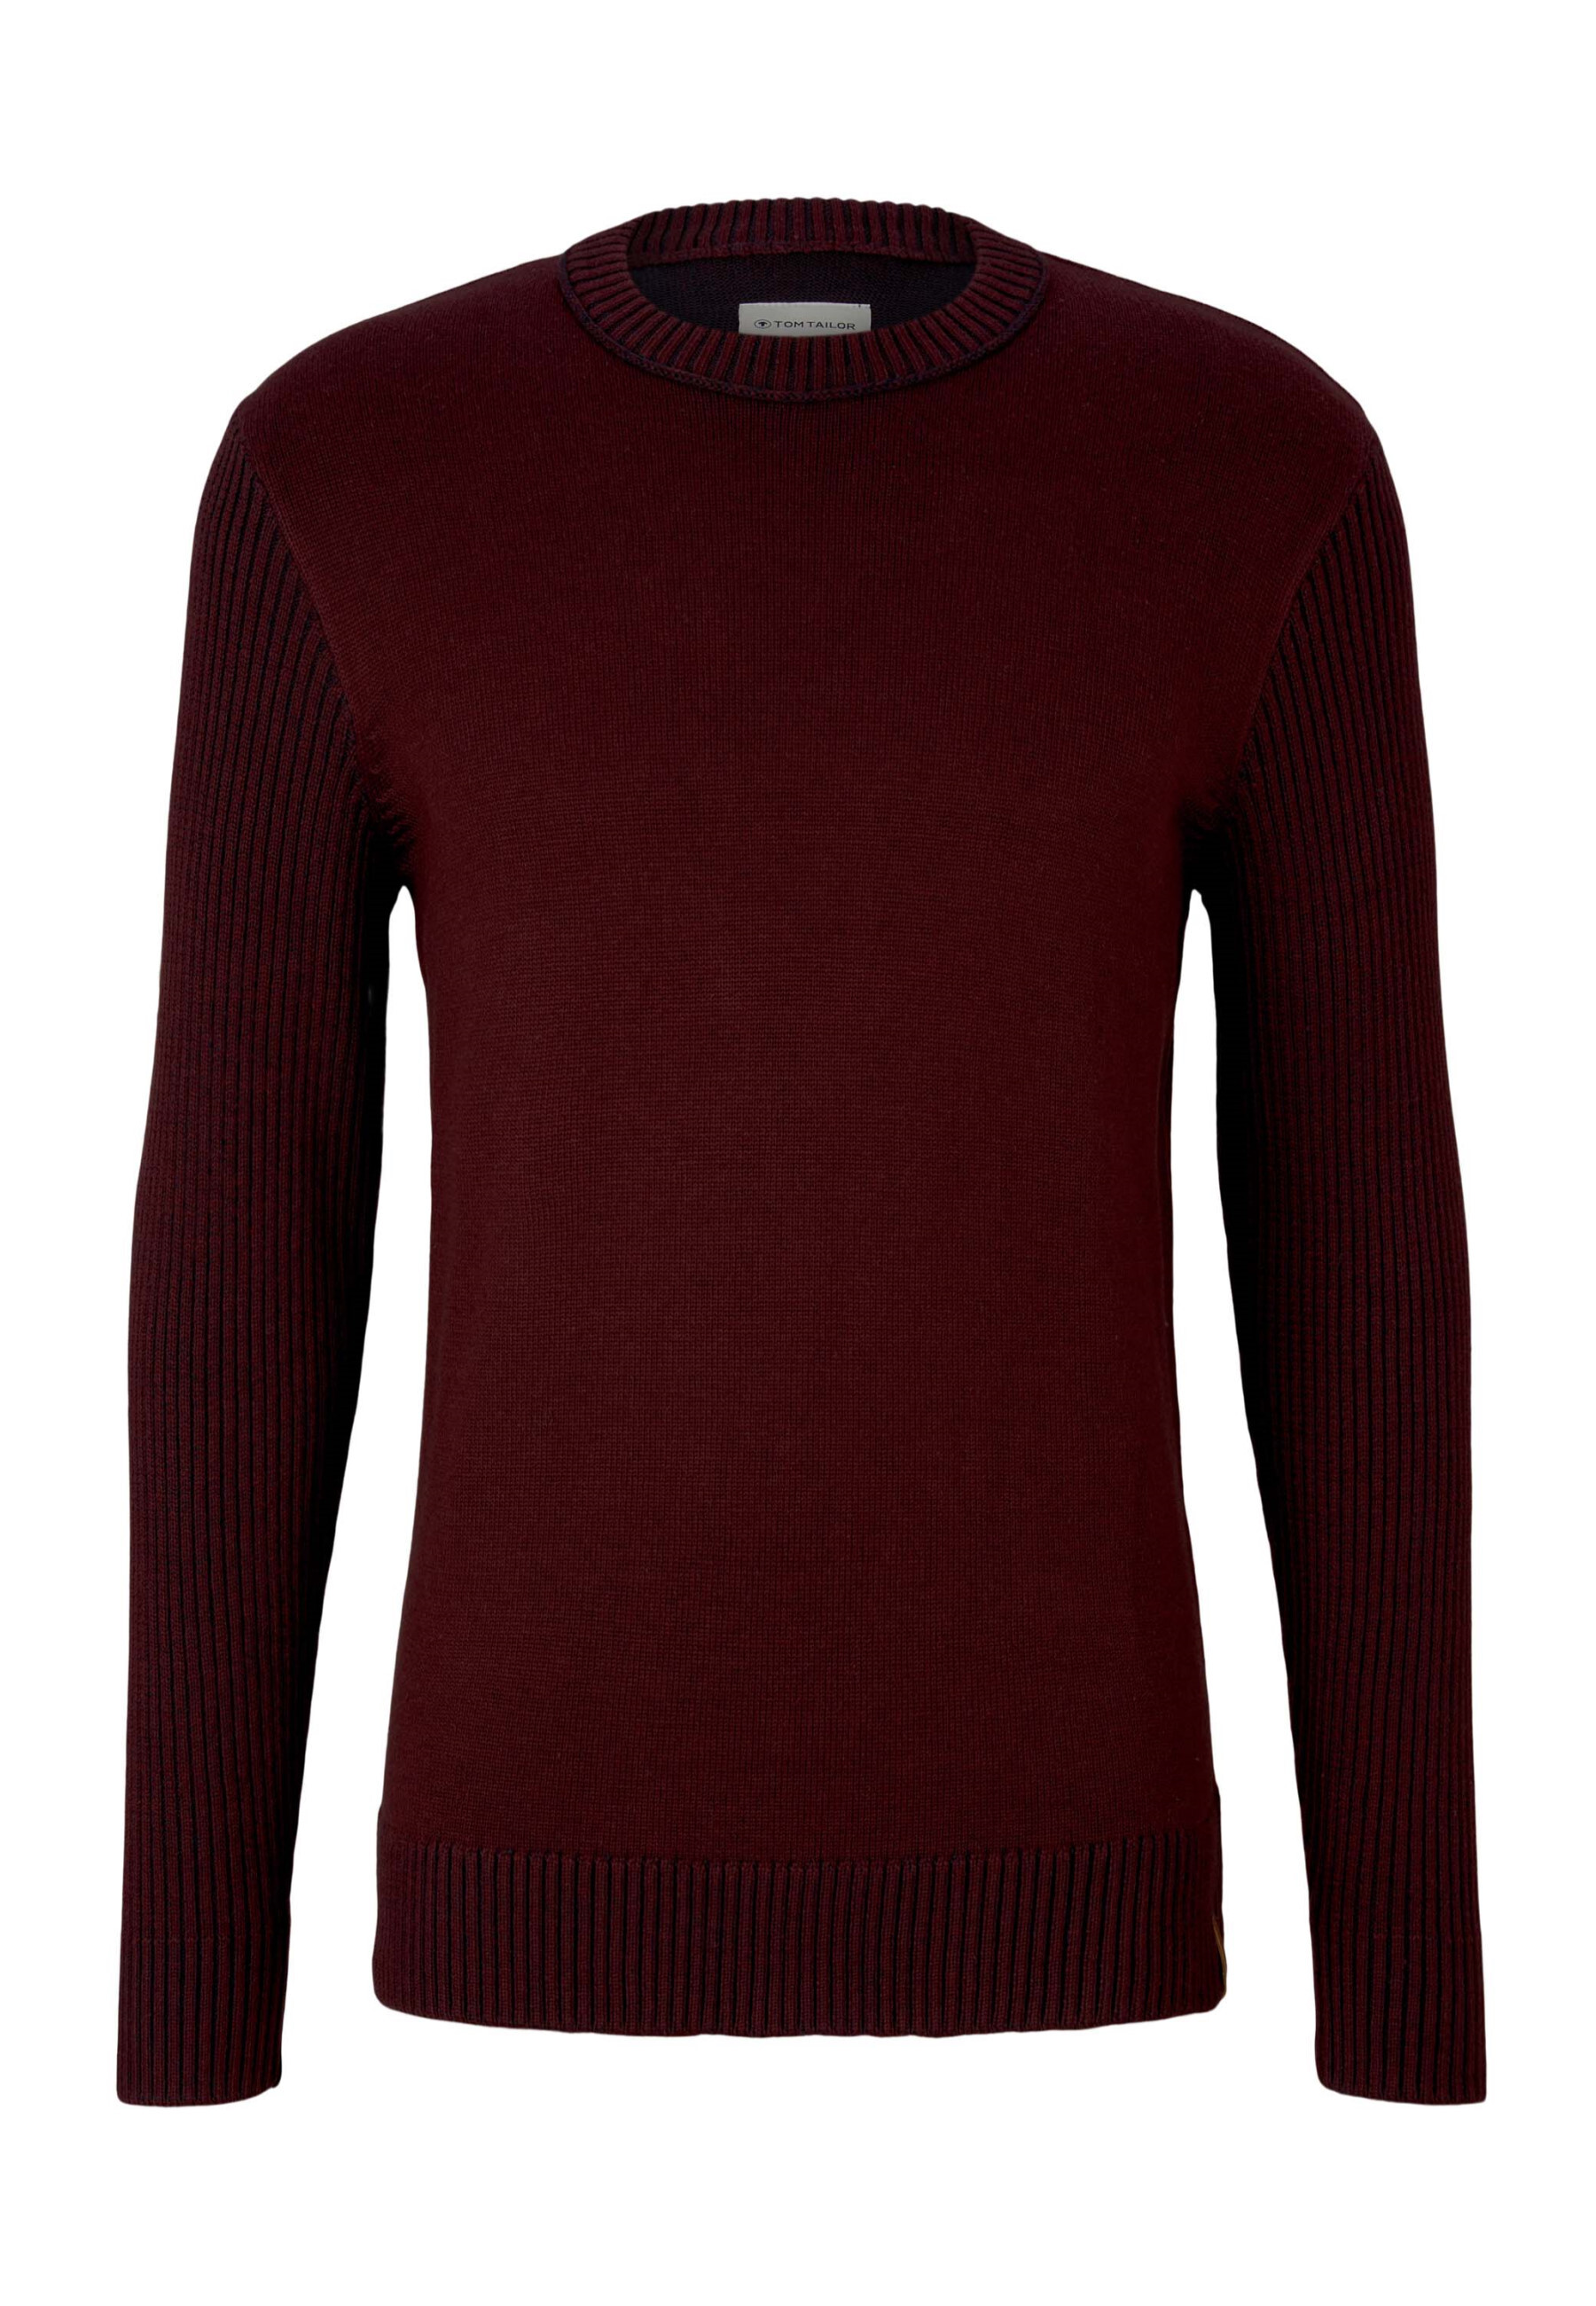 Пуловер Tom Tailor Strick, красный пуловер tom tailor красный